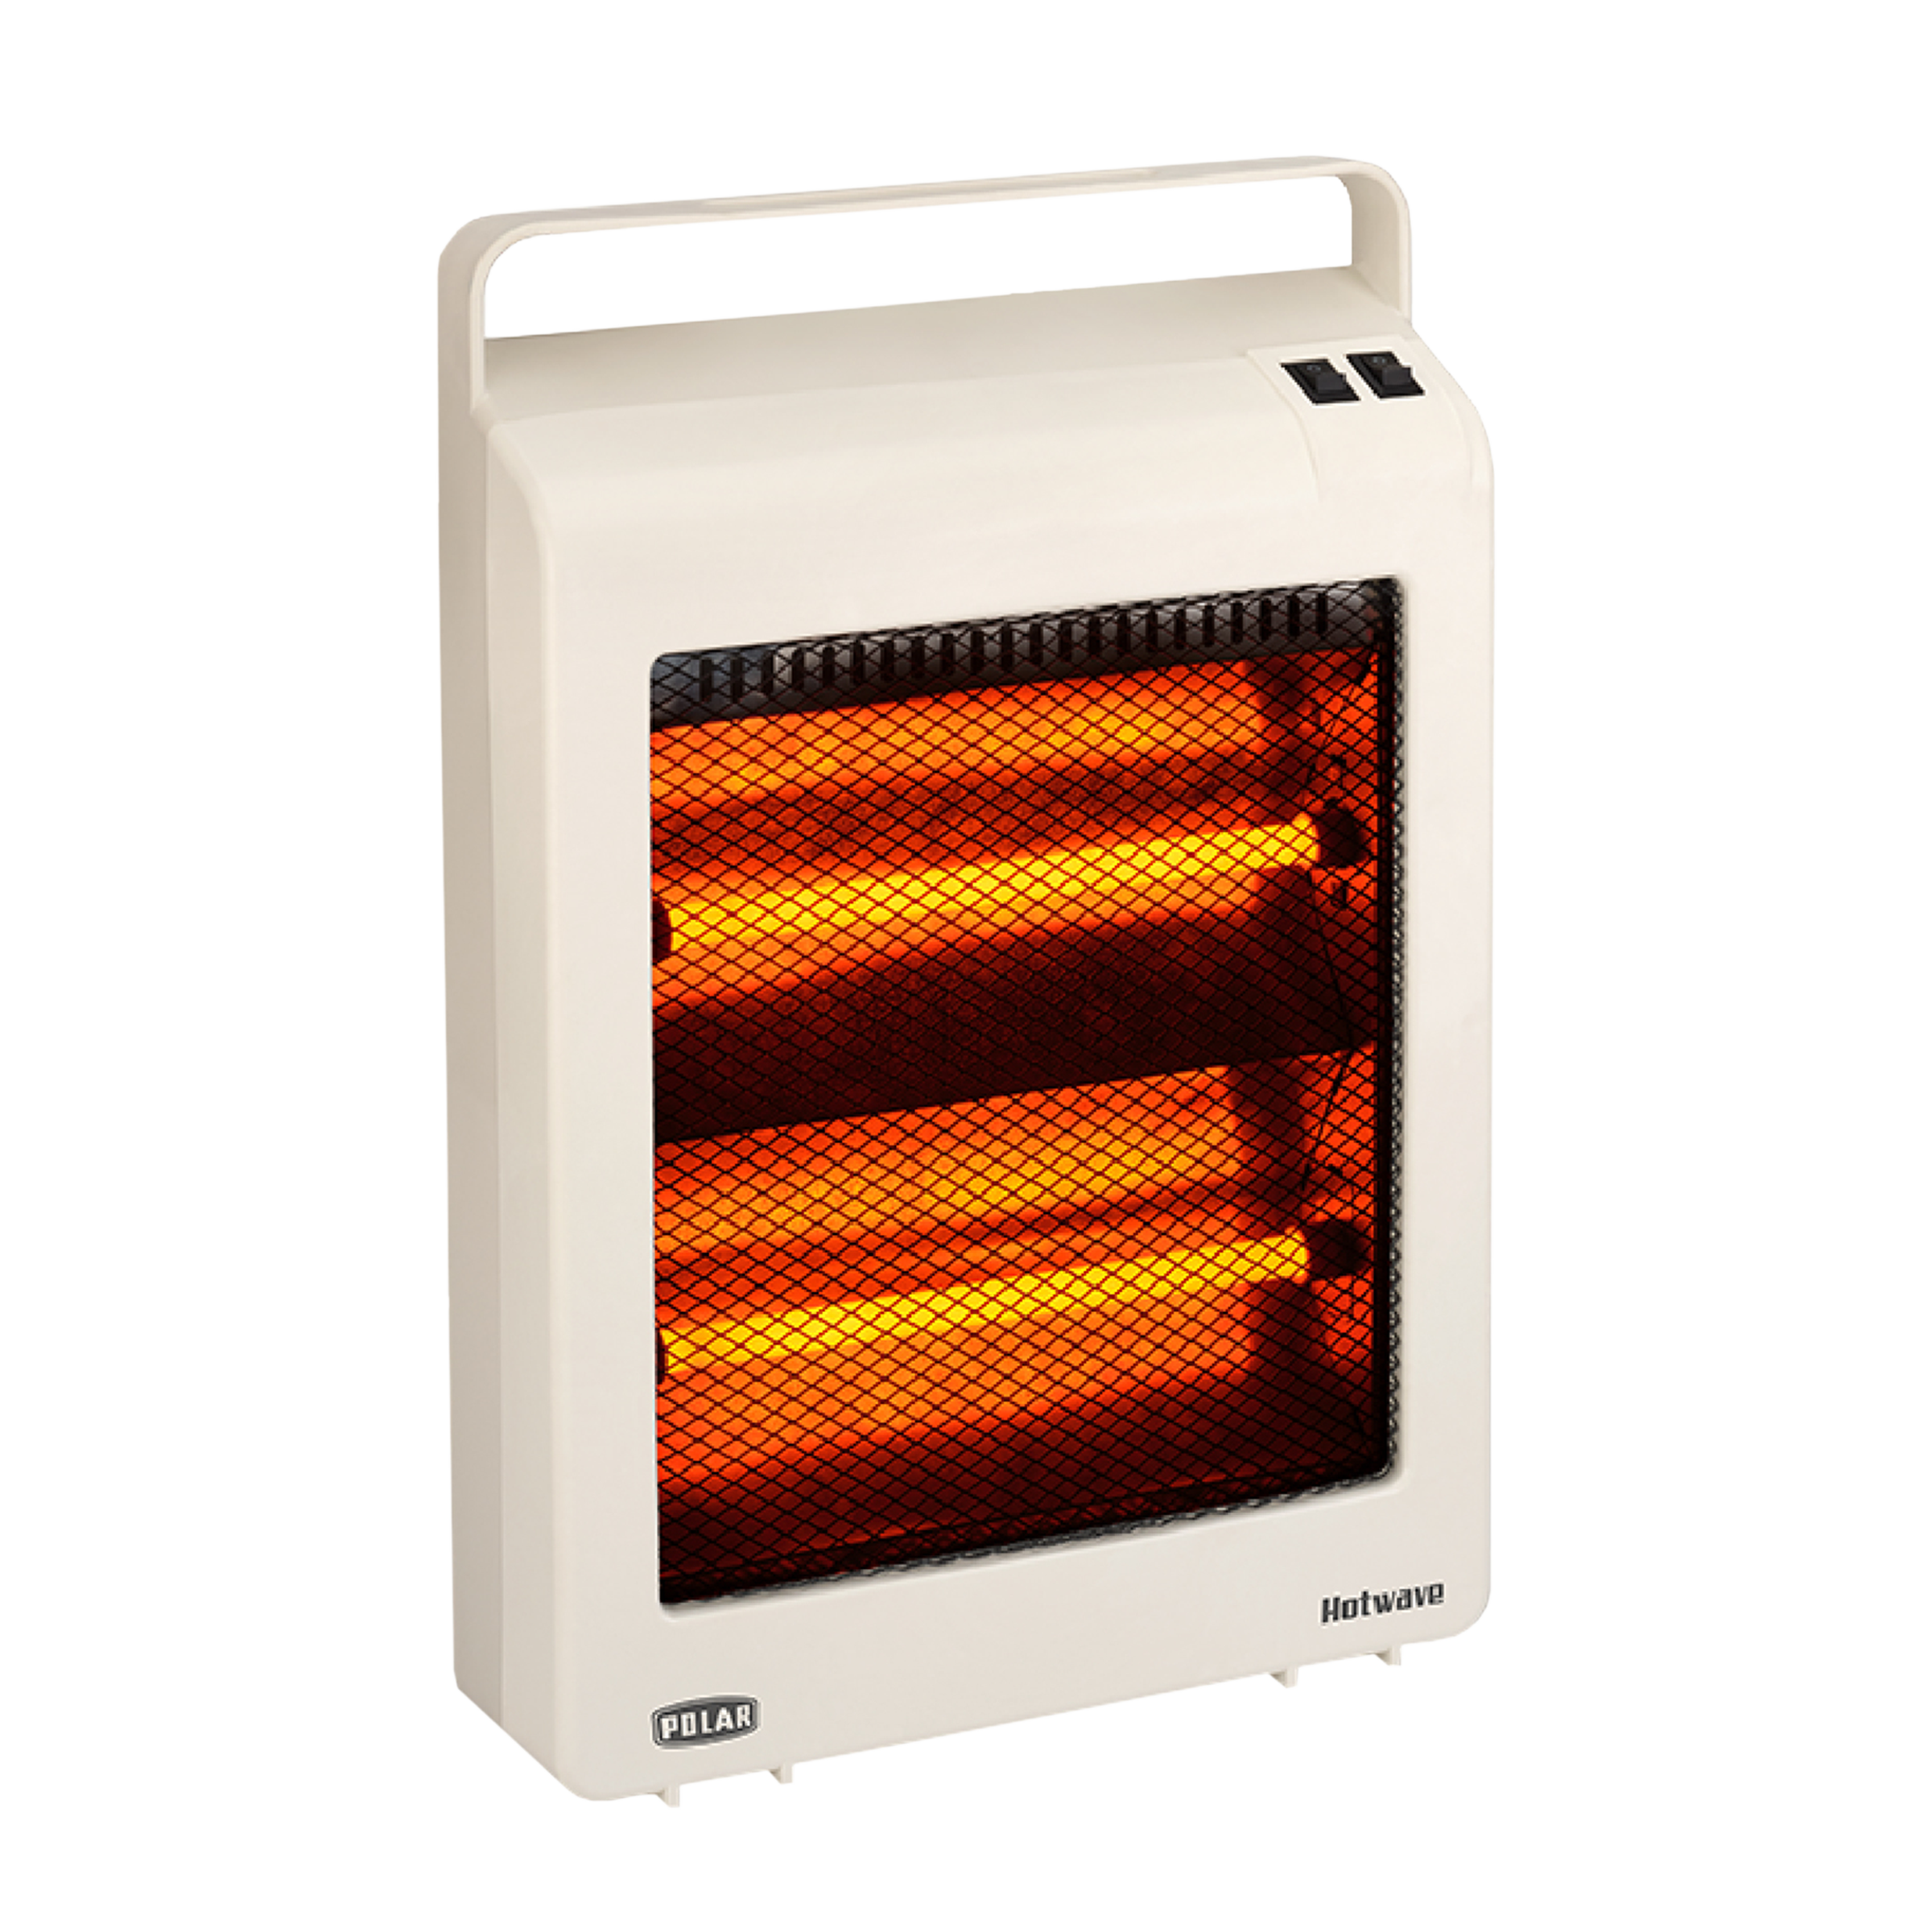 POLAR Hotwave 800 Watts Quartz Room Heater (Dual Heating Power Setting, RHQHW, White)